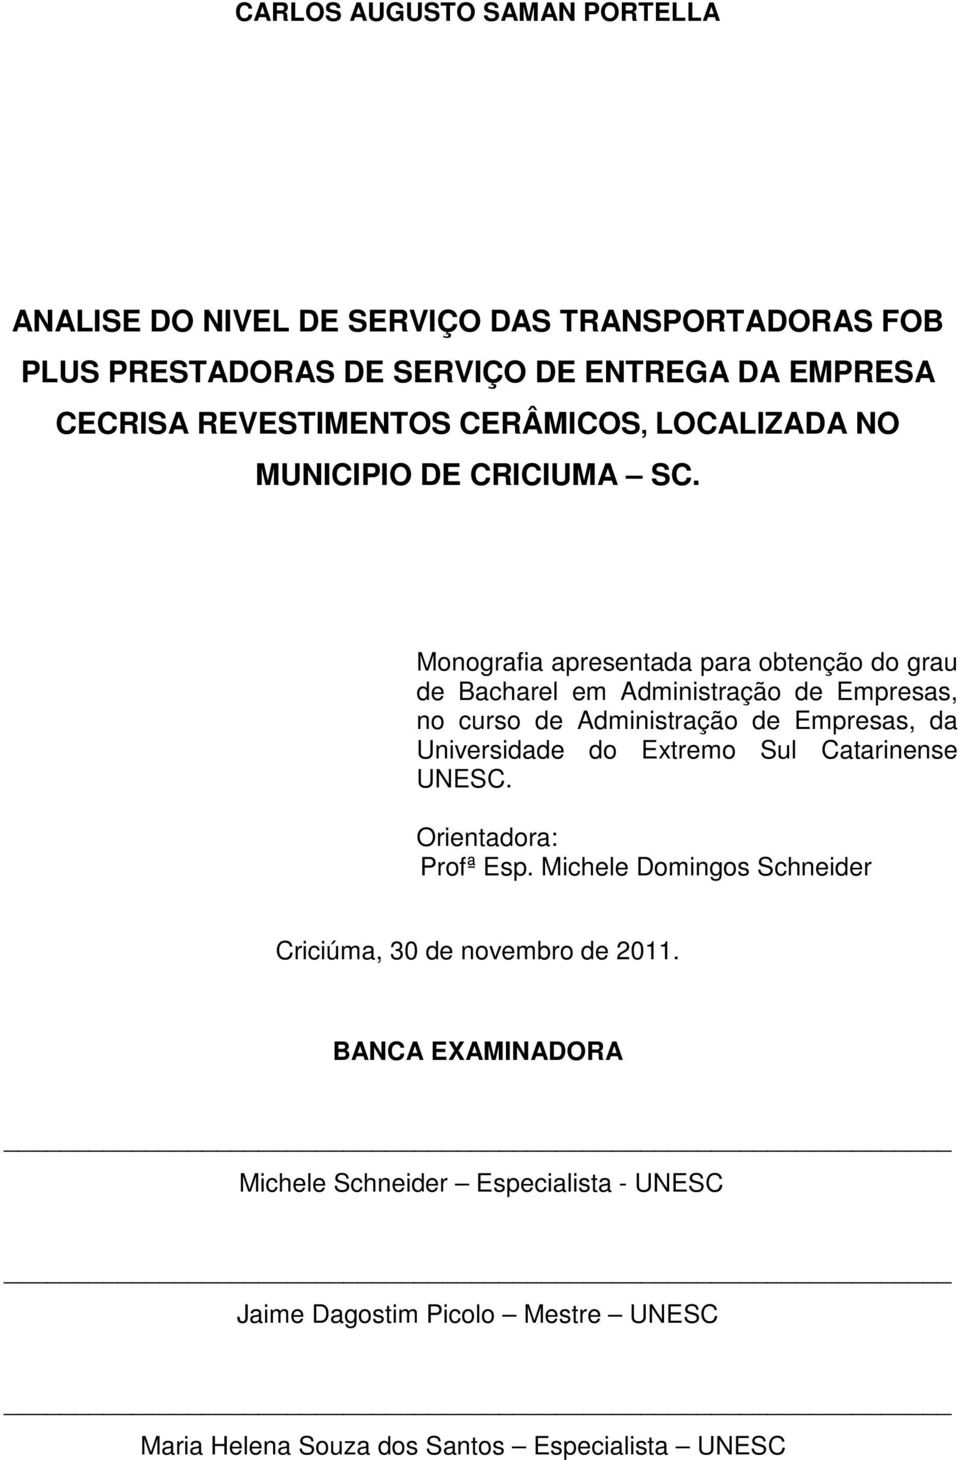 Monografia apresentada para obtenção do grau de Bacharel em Administração de Empresas, no curso de Administração de Empresas, da Universidade do